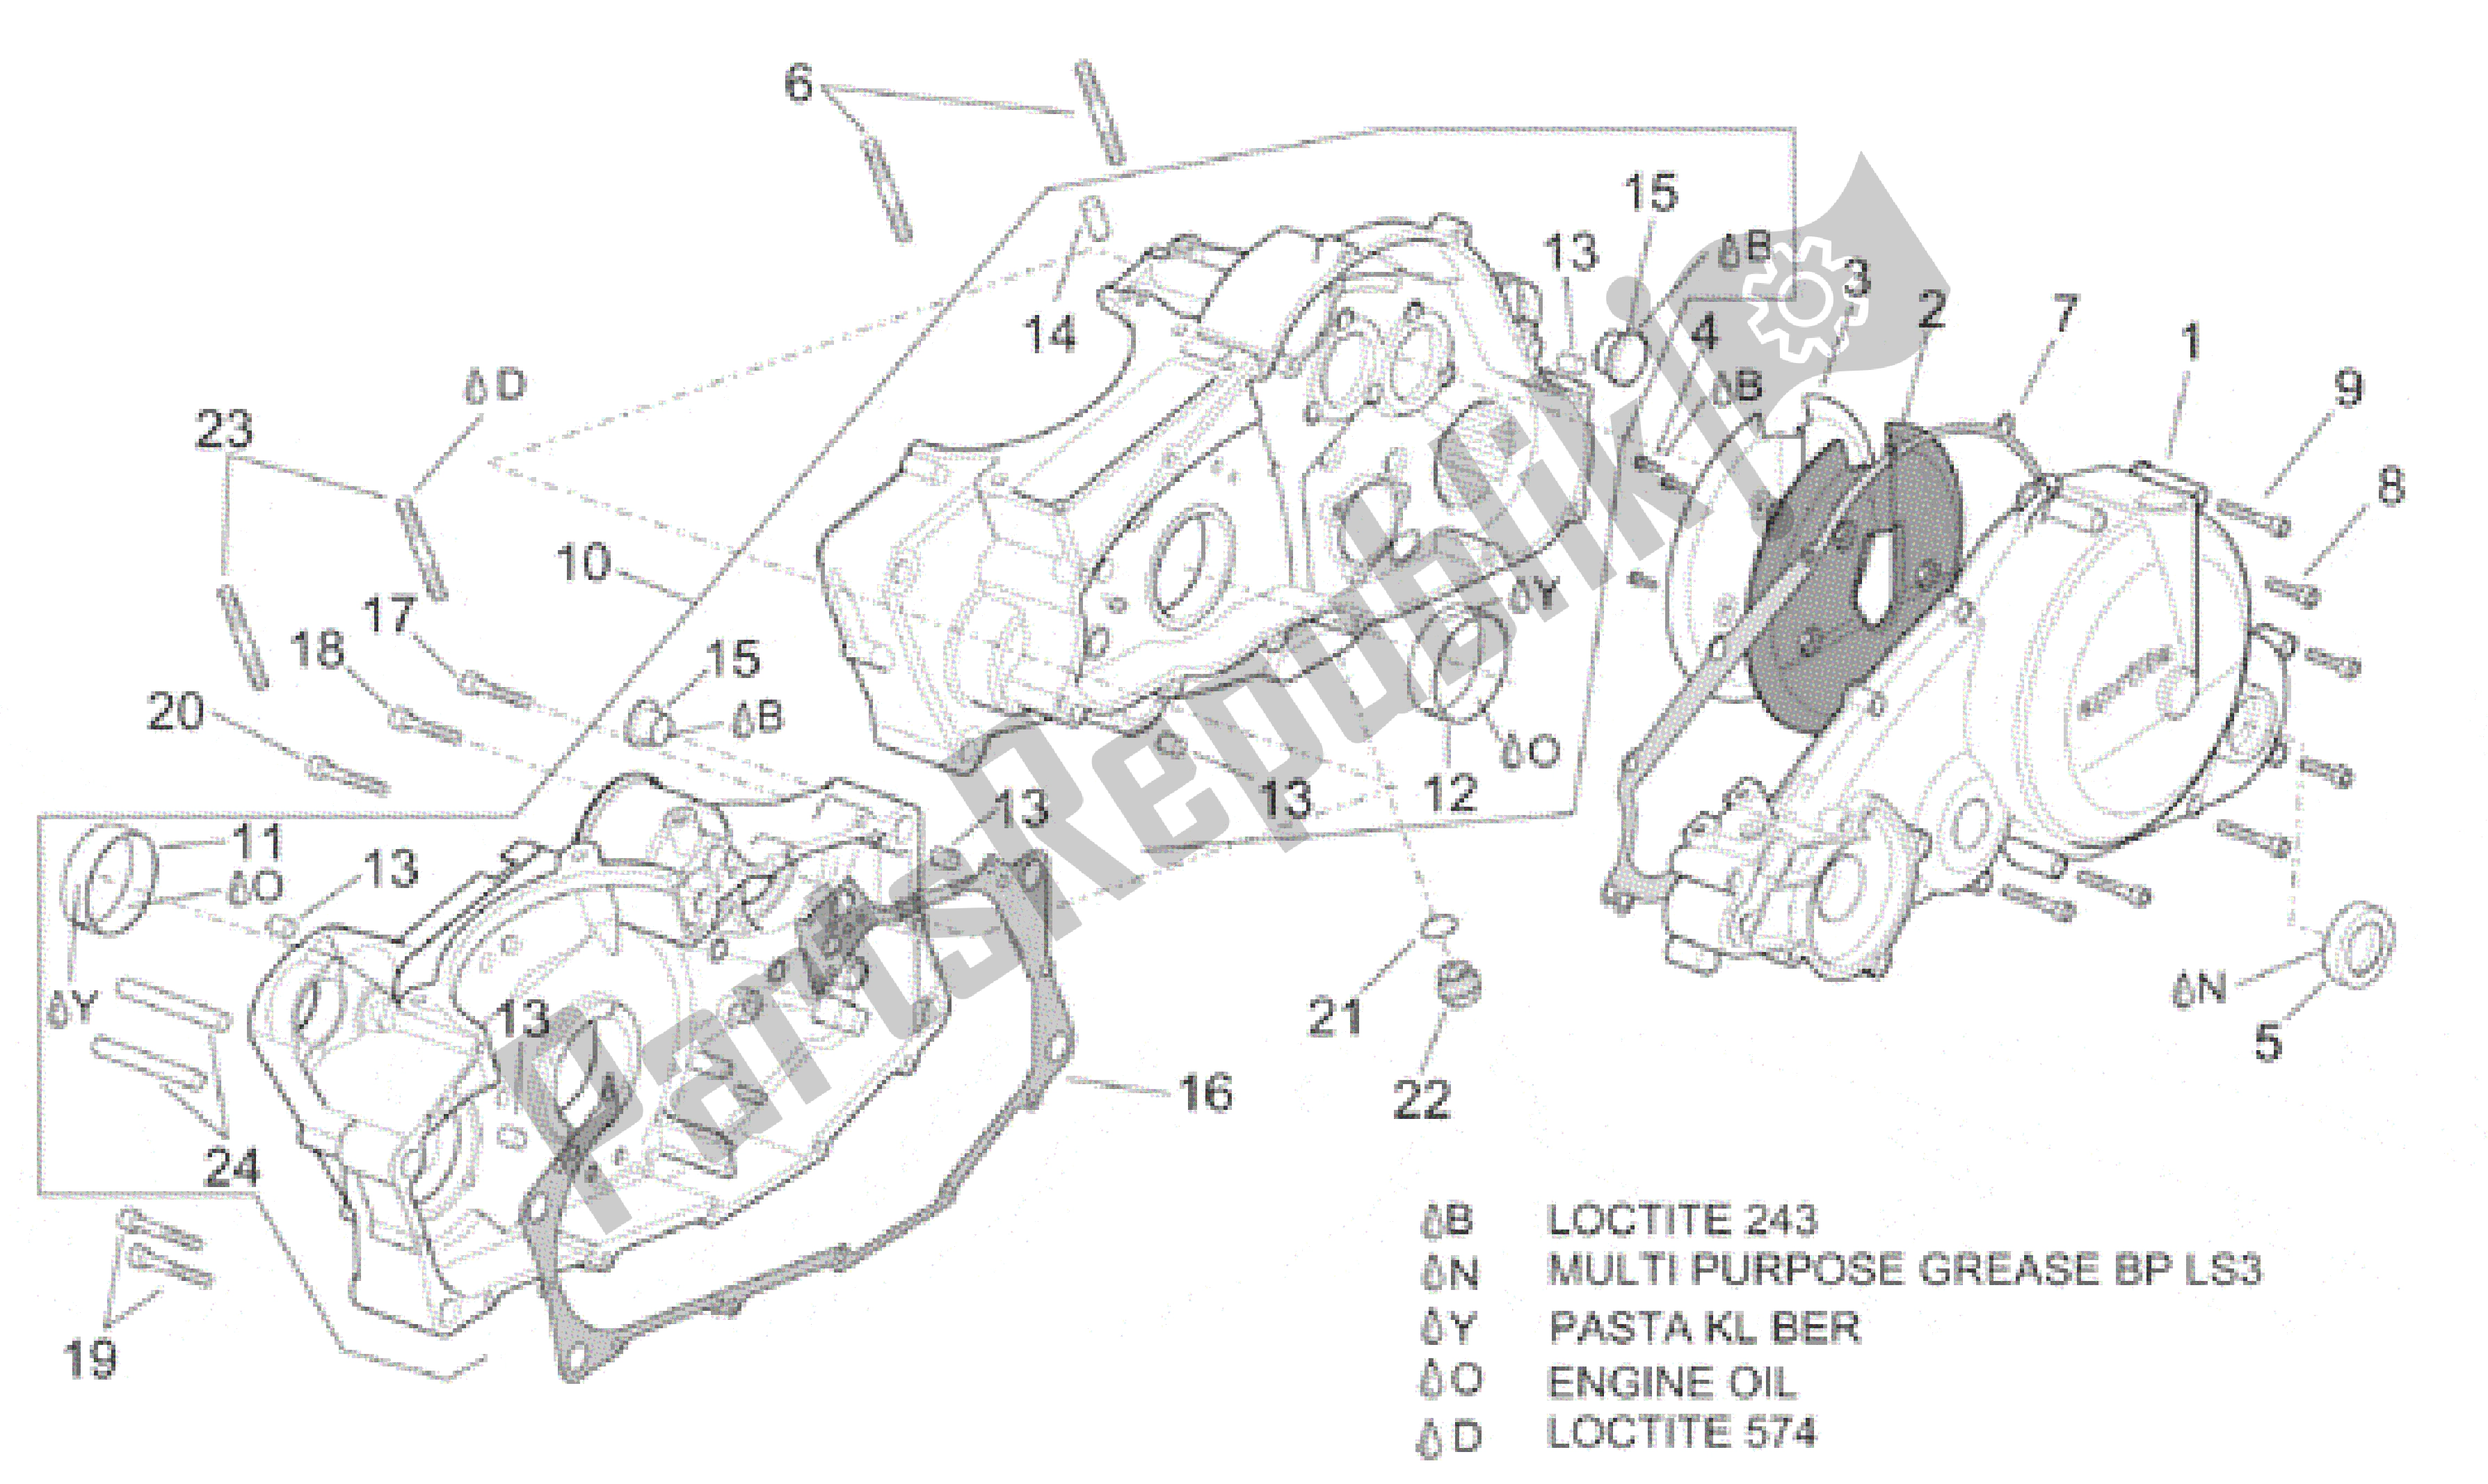 All parts for the Crankcase I of the Aprilia Pegaso 650 1997 - 2000